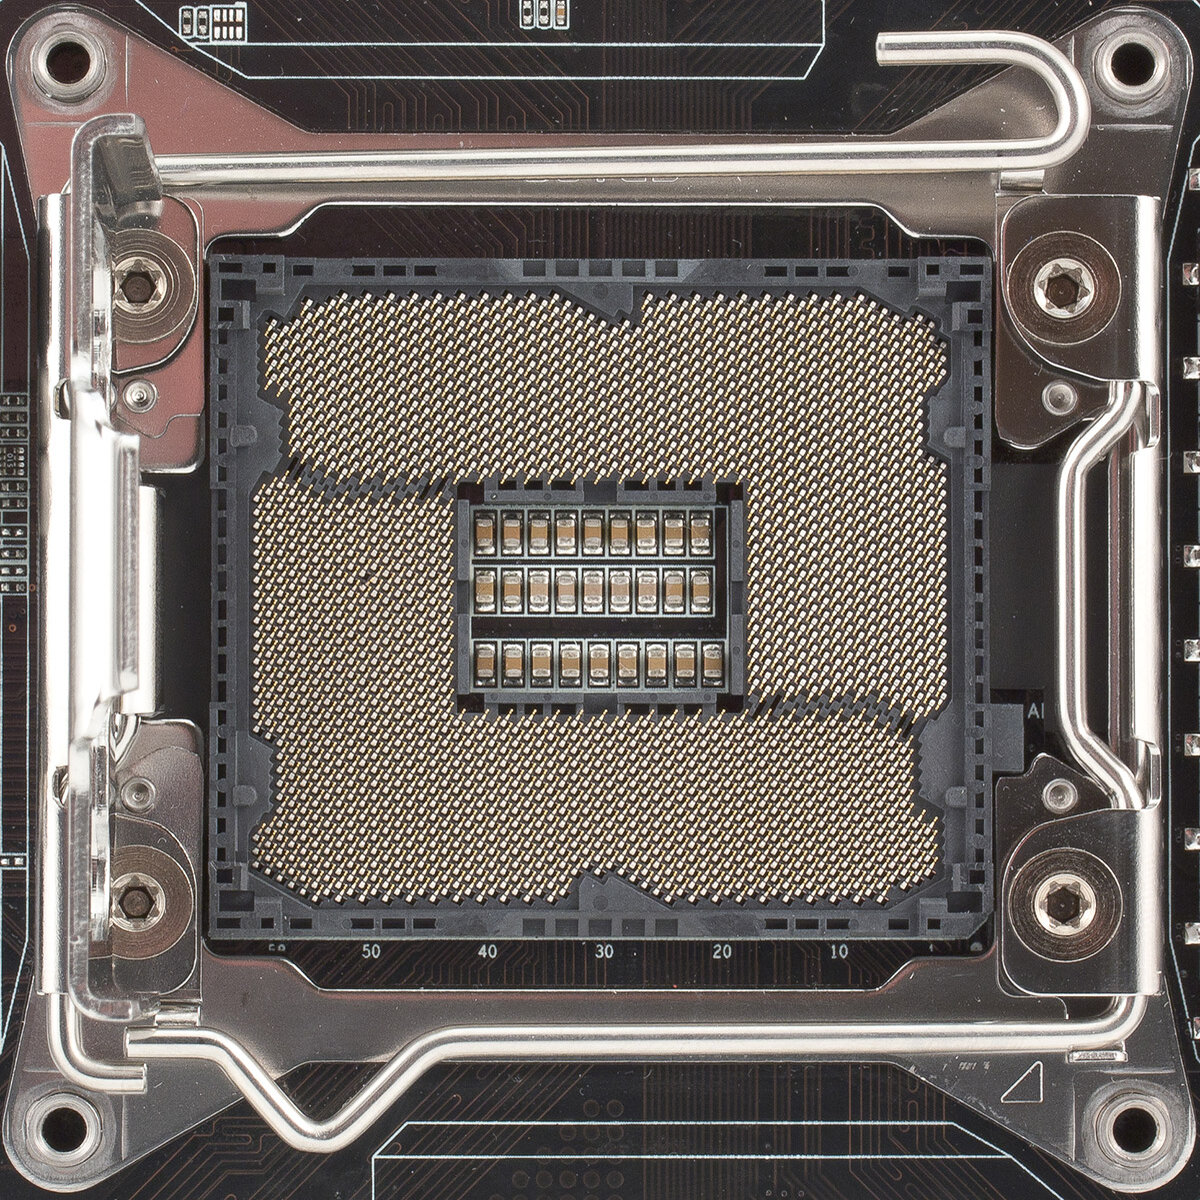 Процессоры для сокета lga. Сокет 2011 v3. LGA 2011-3 сокет. Xeon 2011v3 сокет. LGA 2011 v3 сокет погнутый.